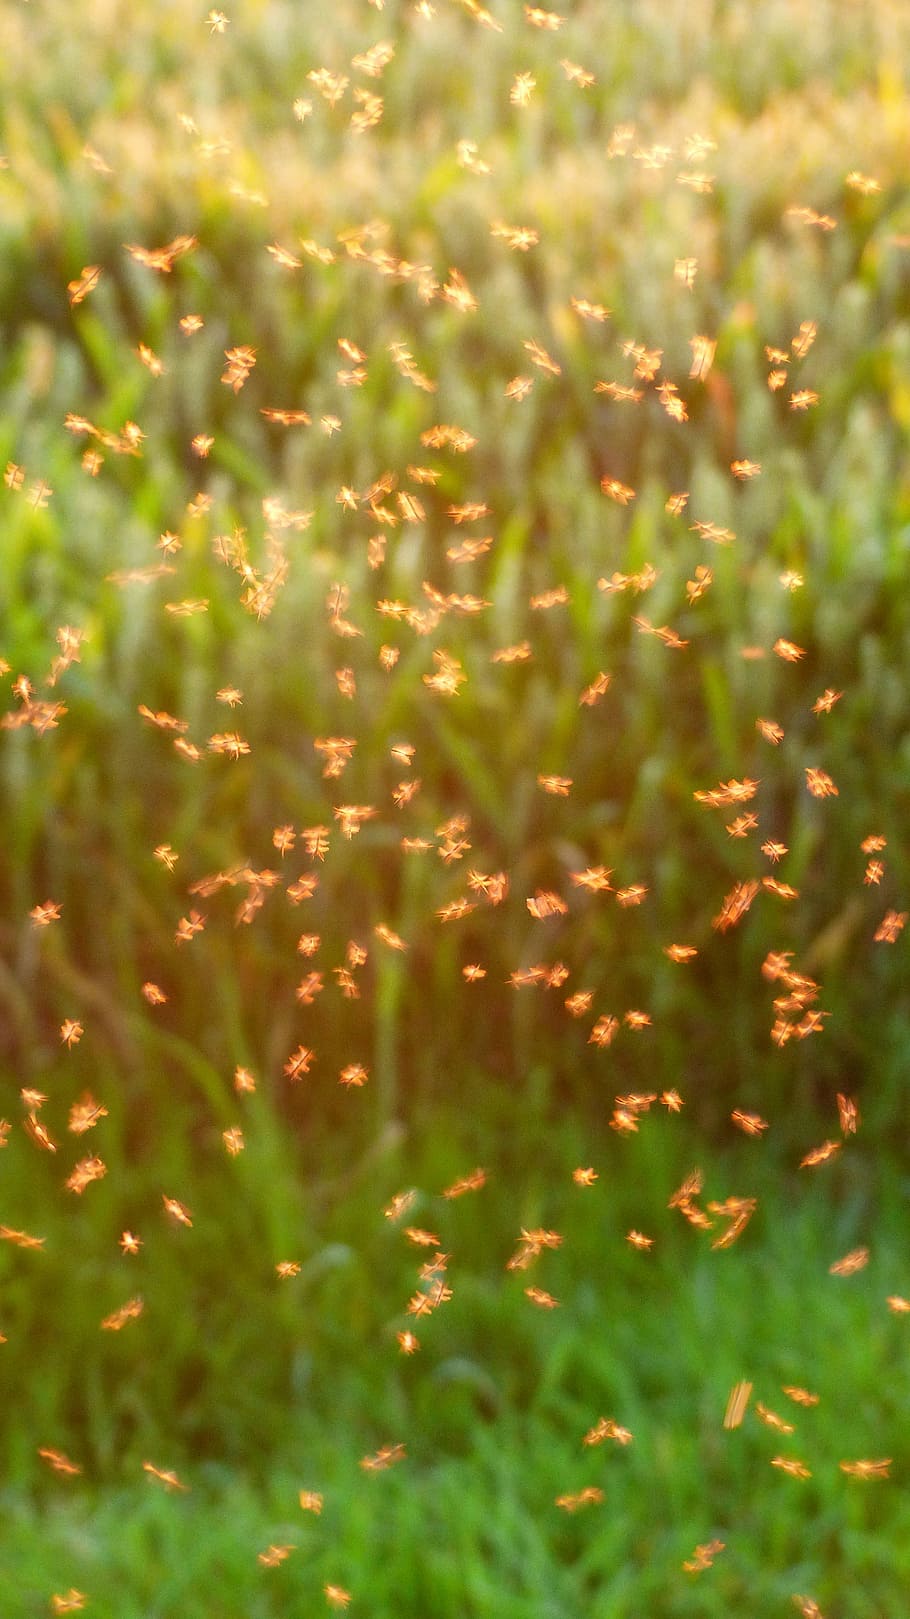 蚊の群れ, 群れ, 蚊, fliegenschwarm, バックライト, 昆虫, 非噛むミッジ, ユスリカ, ダンス蚊, 群れの蚊